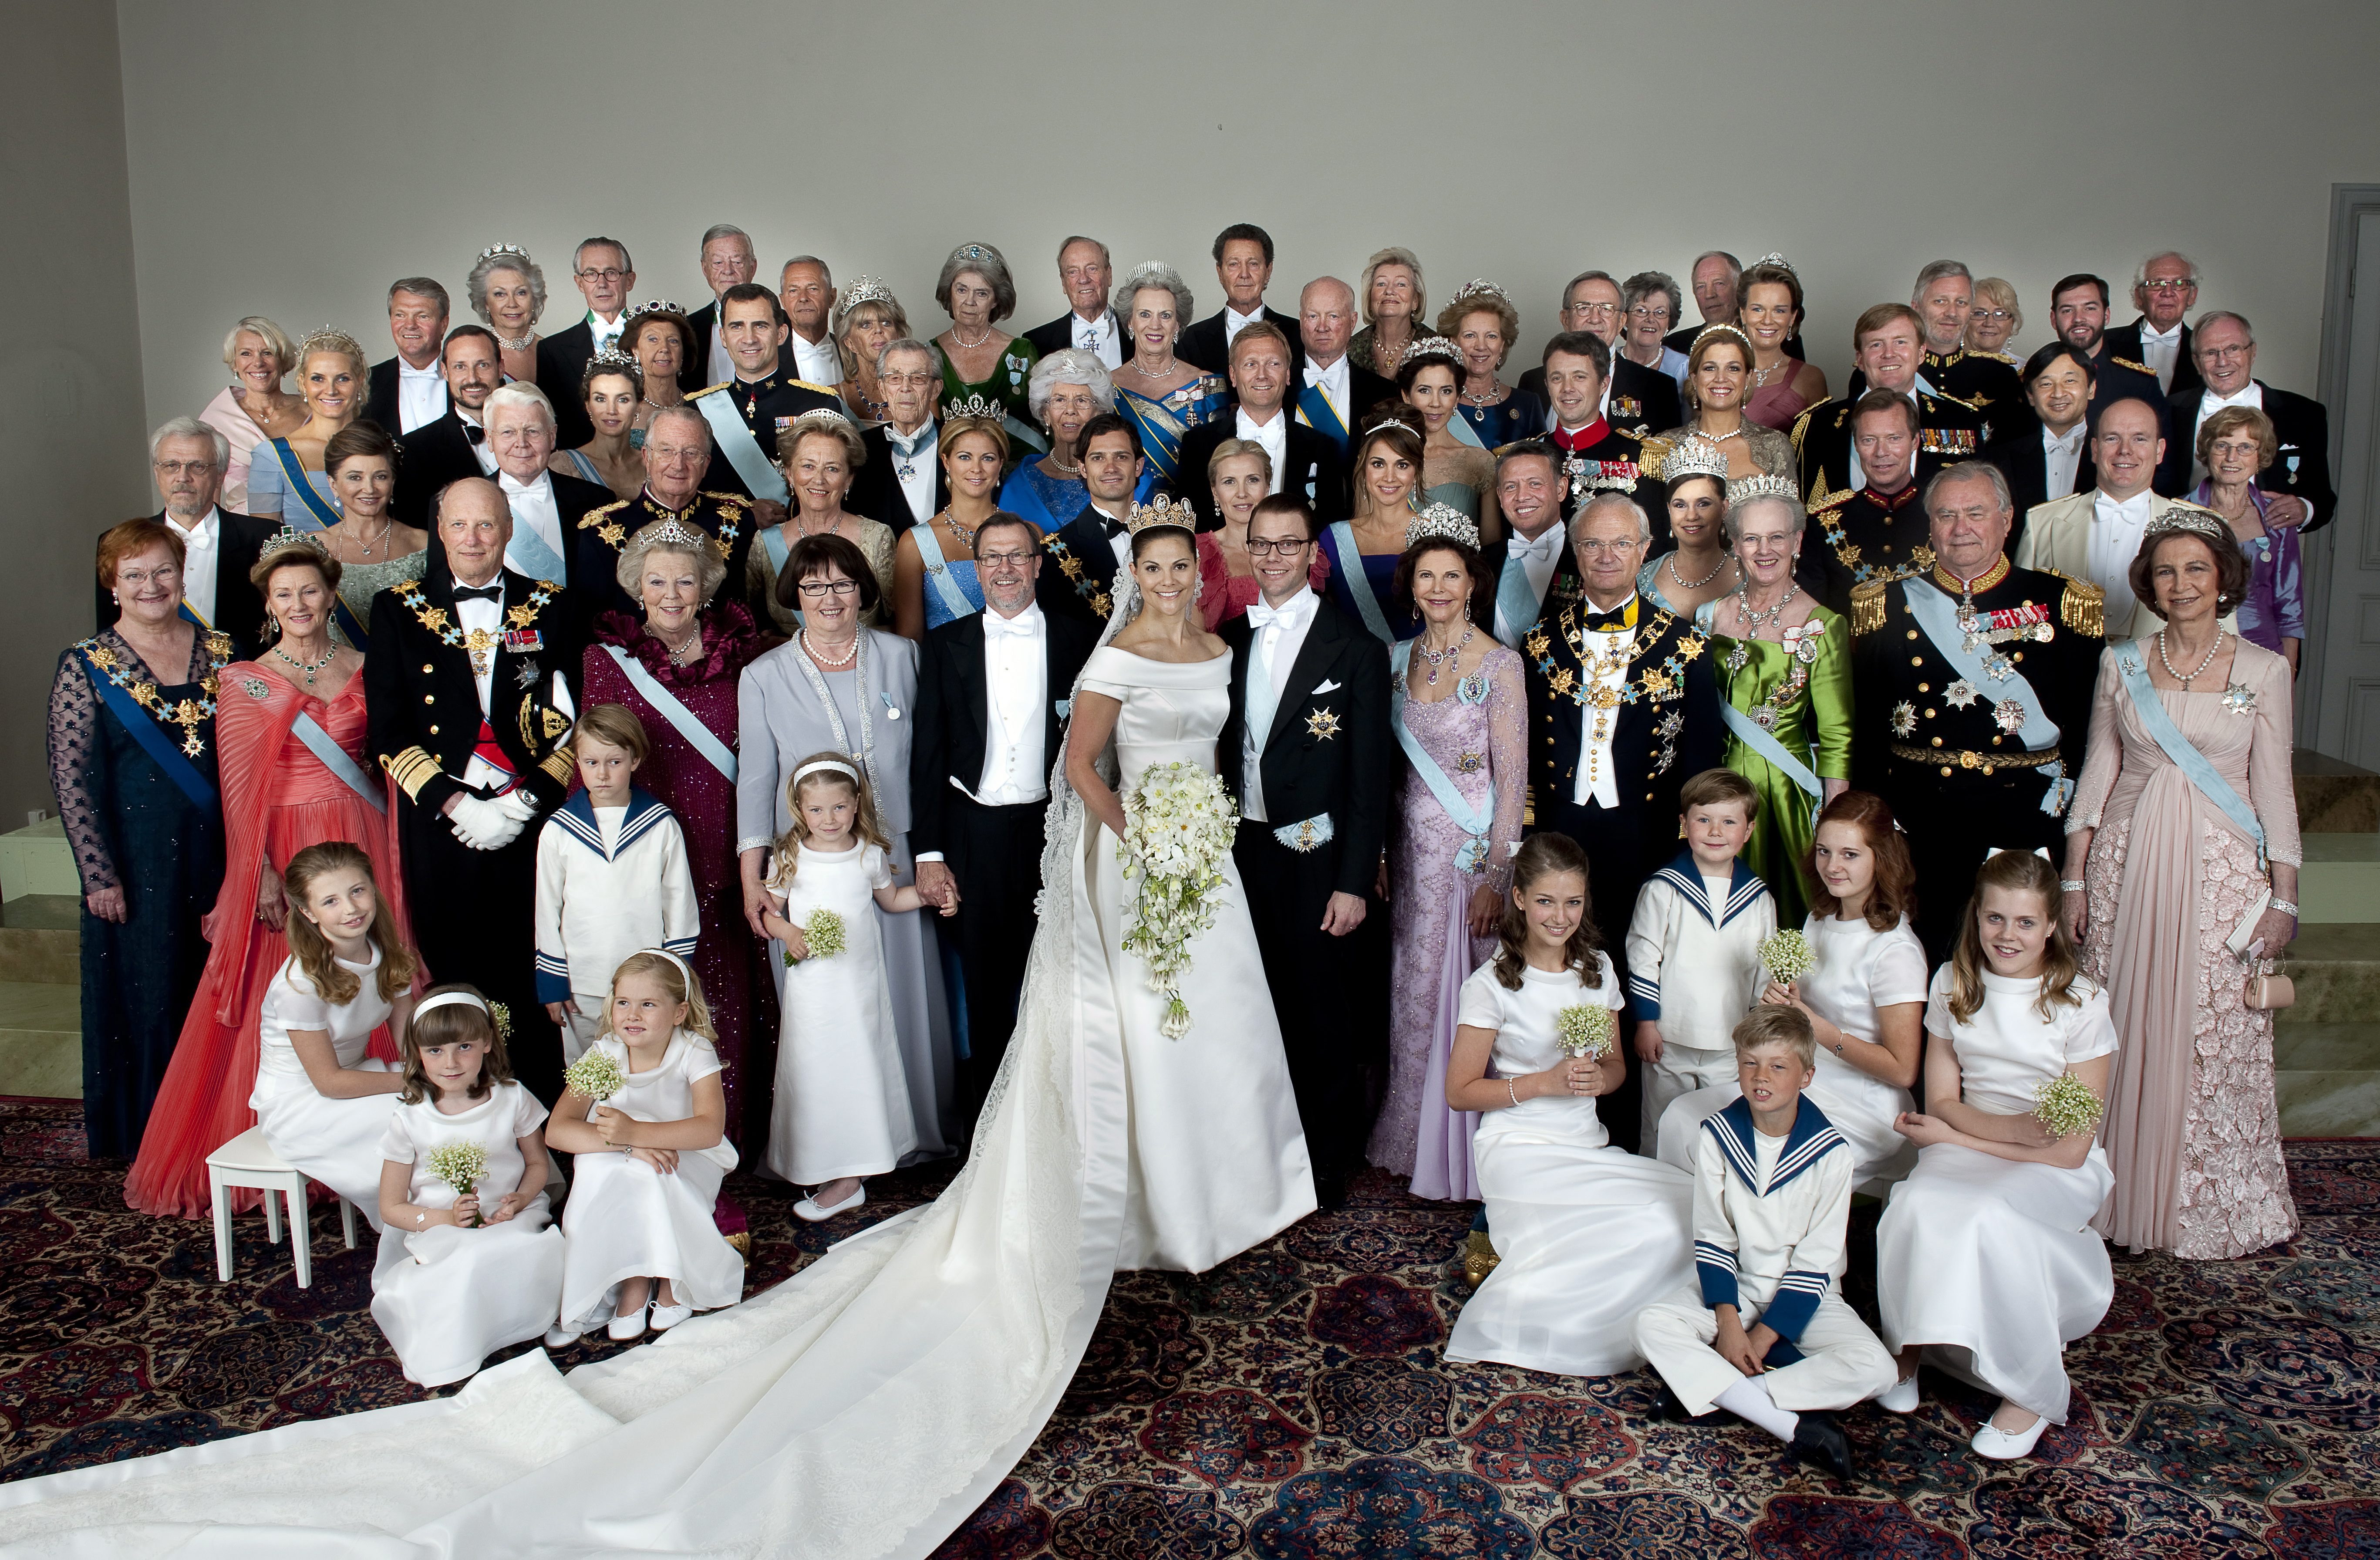 <p><strong>Швеция: принцеса Виктория и принц Данаил</strong></p>

<p>До 1980 г. официален наследник на шведската корона е по-малкият брат на Виктория, принц Карл Филип. След като Швеция приема поправка в конституцията, която казва, че първото дете наследява трона, независимо от пола му, то Виктория става престолонаследник. През 2010 г. тя се омъжва в Стокхолм за своя любим &ndash; Даниел Вестлинг.</p>